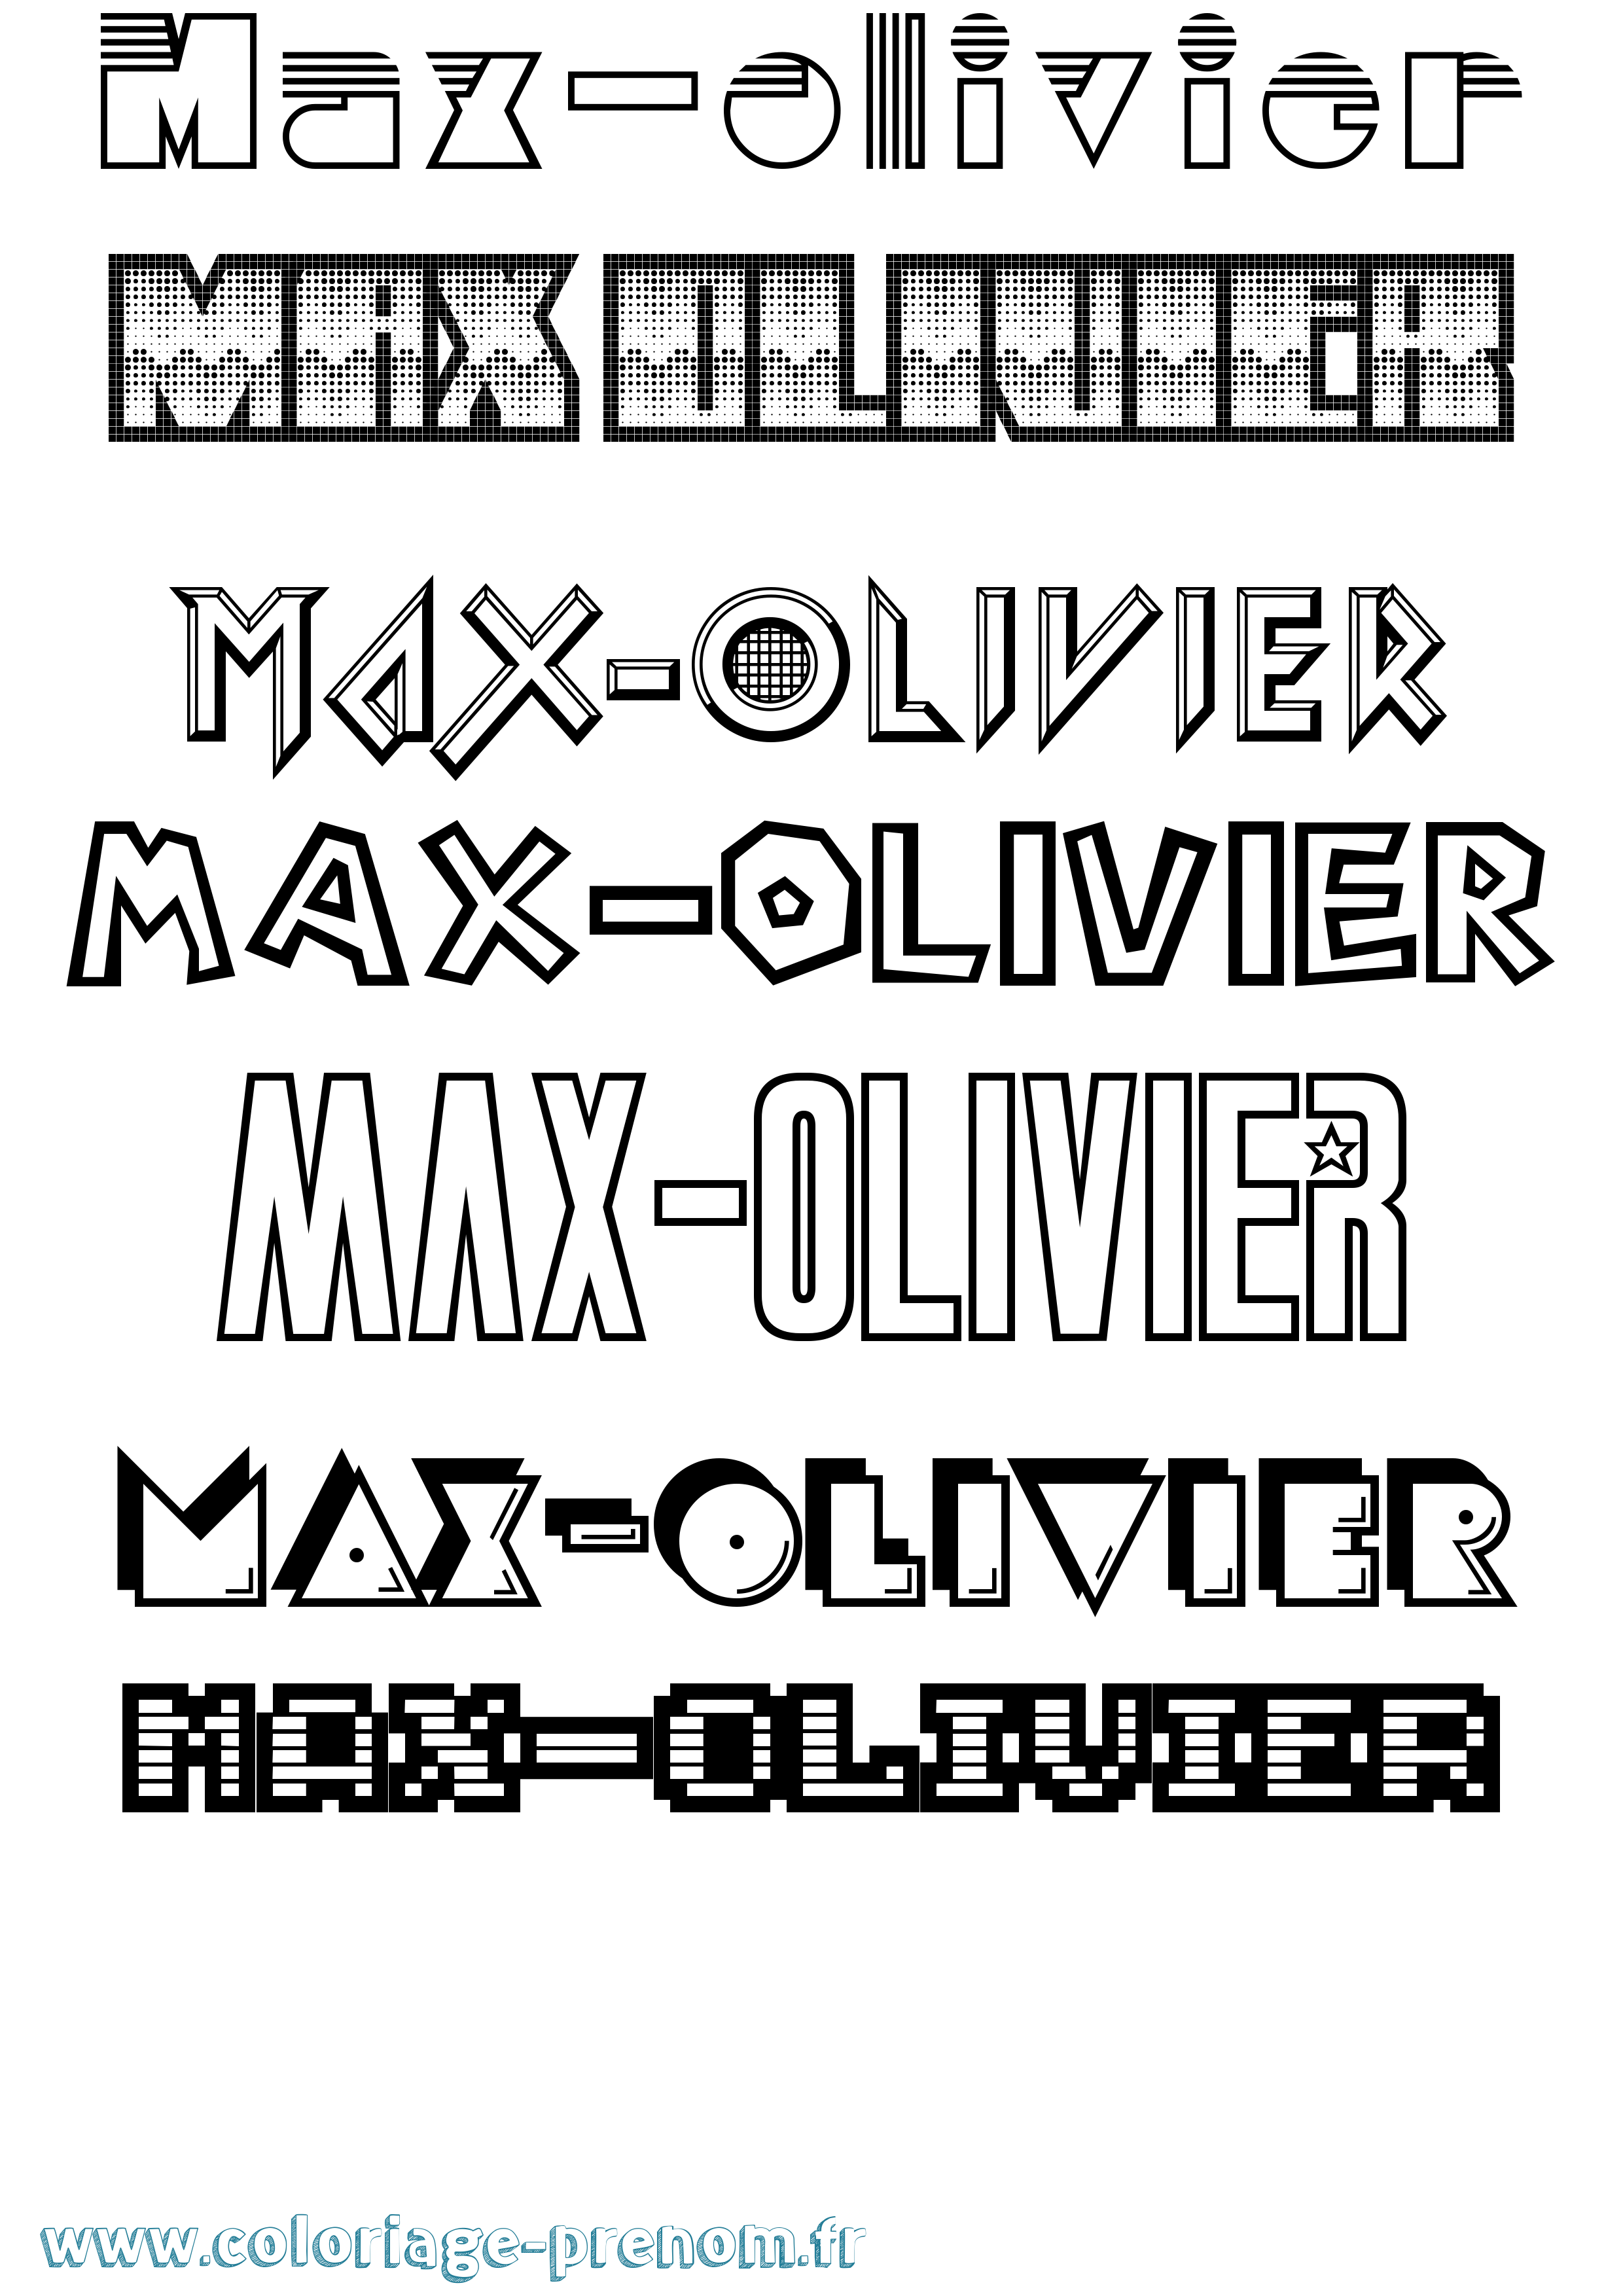 Coloriage prénom Max-Olivier Jeux Vidéos